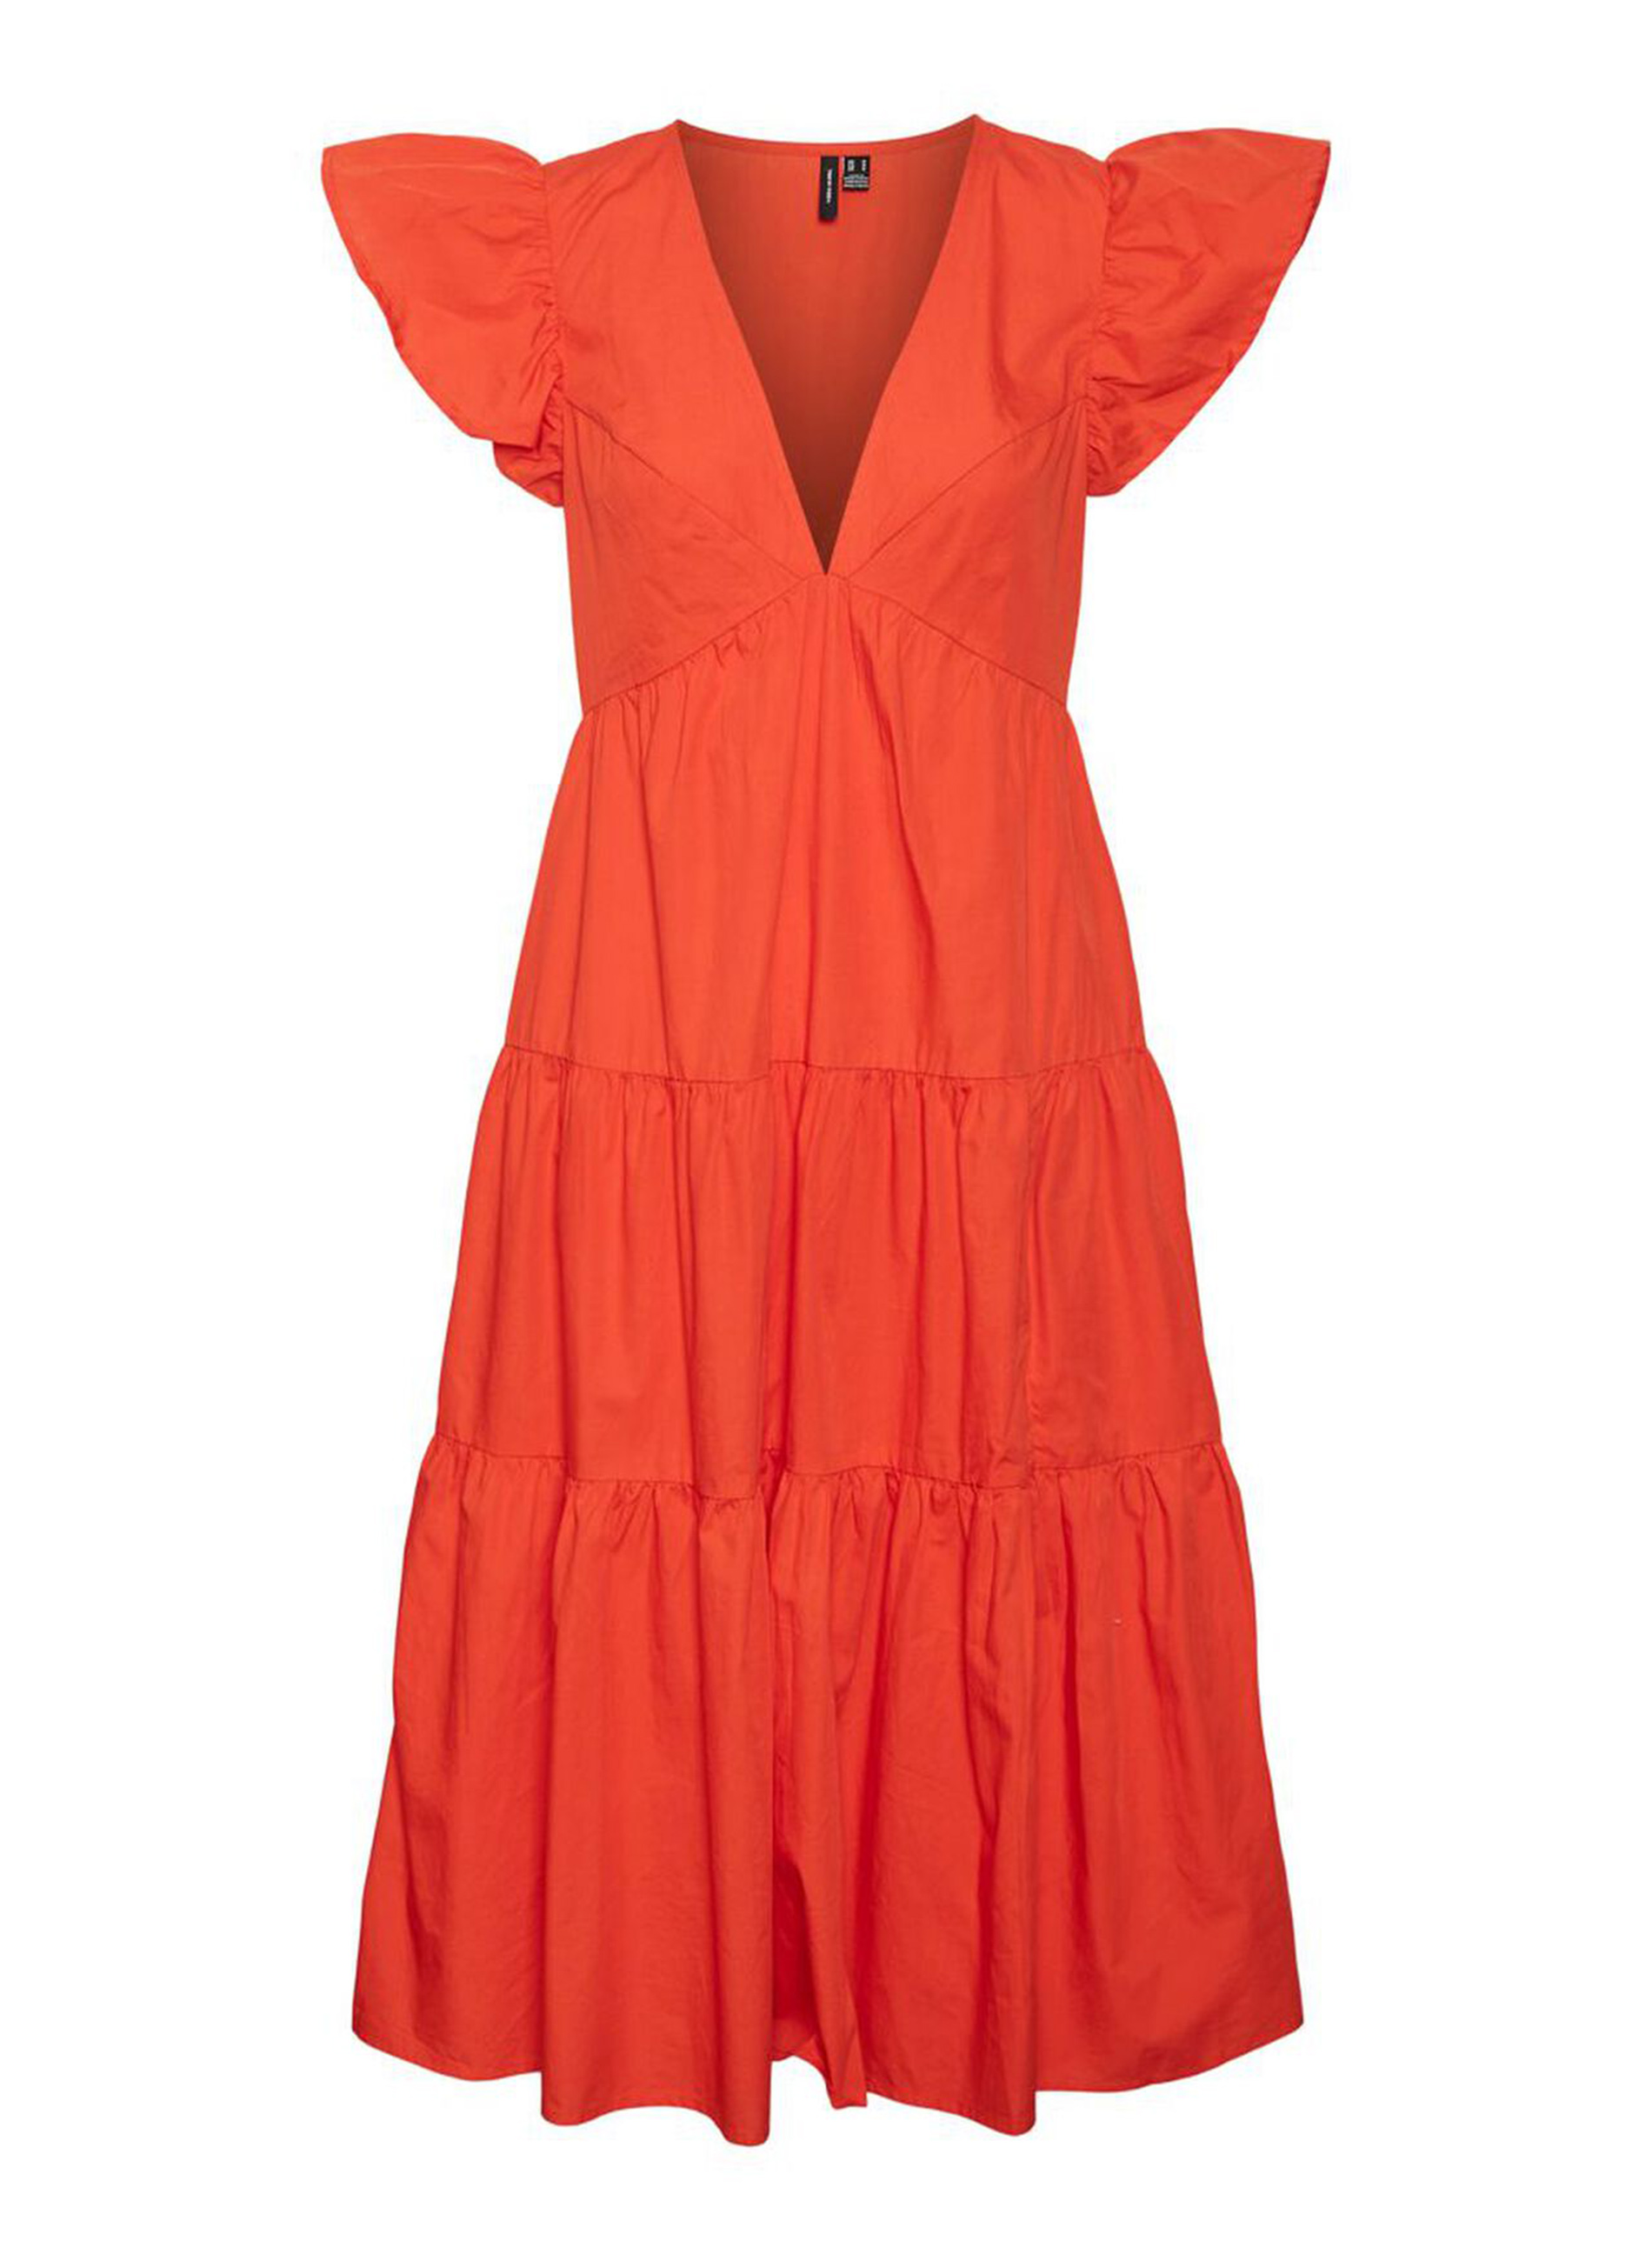 Φόρεμα Πορτοκαλί Ποπλίνα